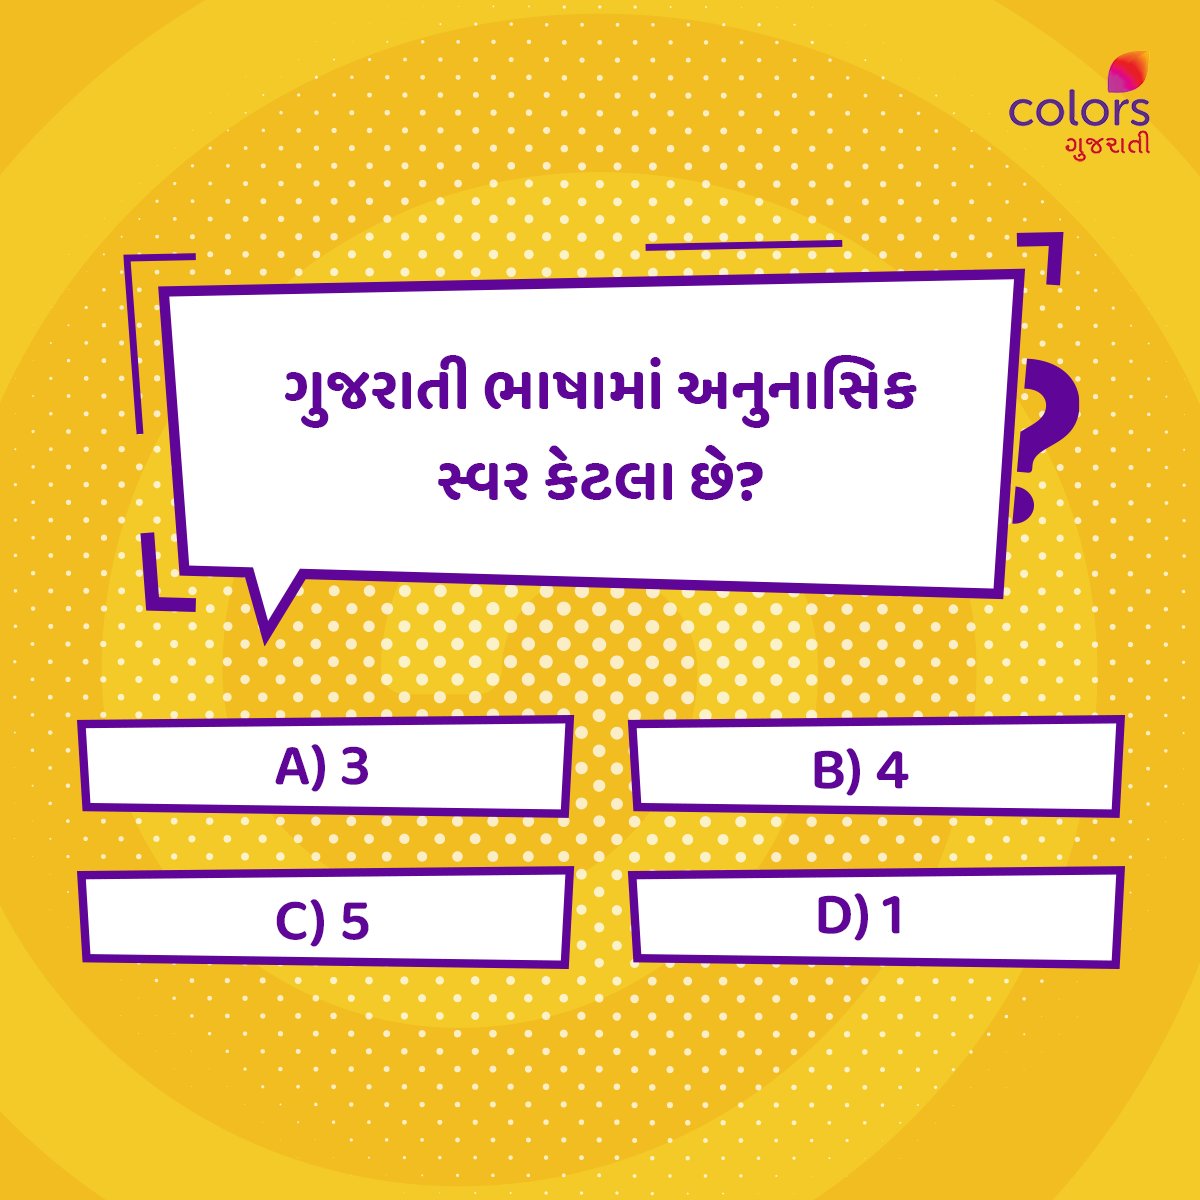 શું તમે ગુજરાતી ભાષાના સ્વર અને વ્યજંન વિશે જાણો છો, તો Comment માં જણાવો.👇

#Colorsgujarati #Gujarat #Quiz #Facts #generalquiz